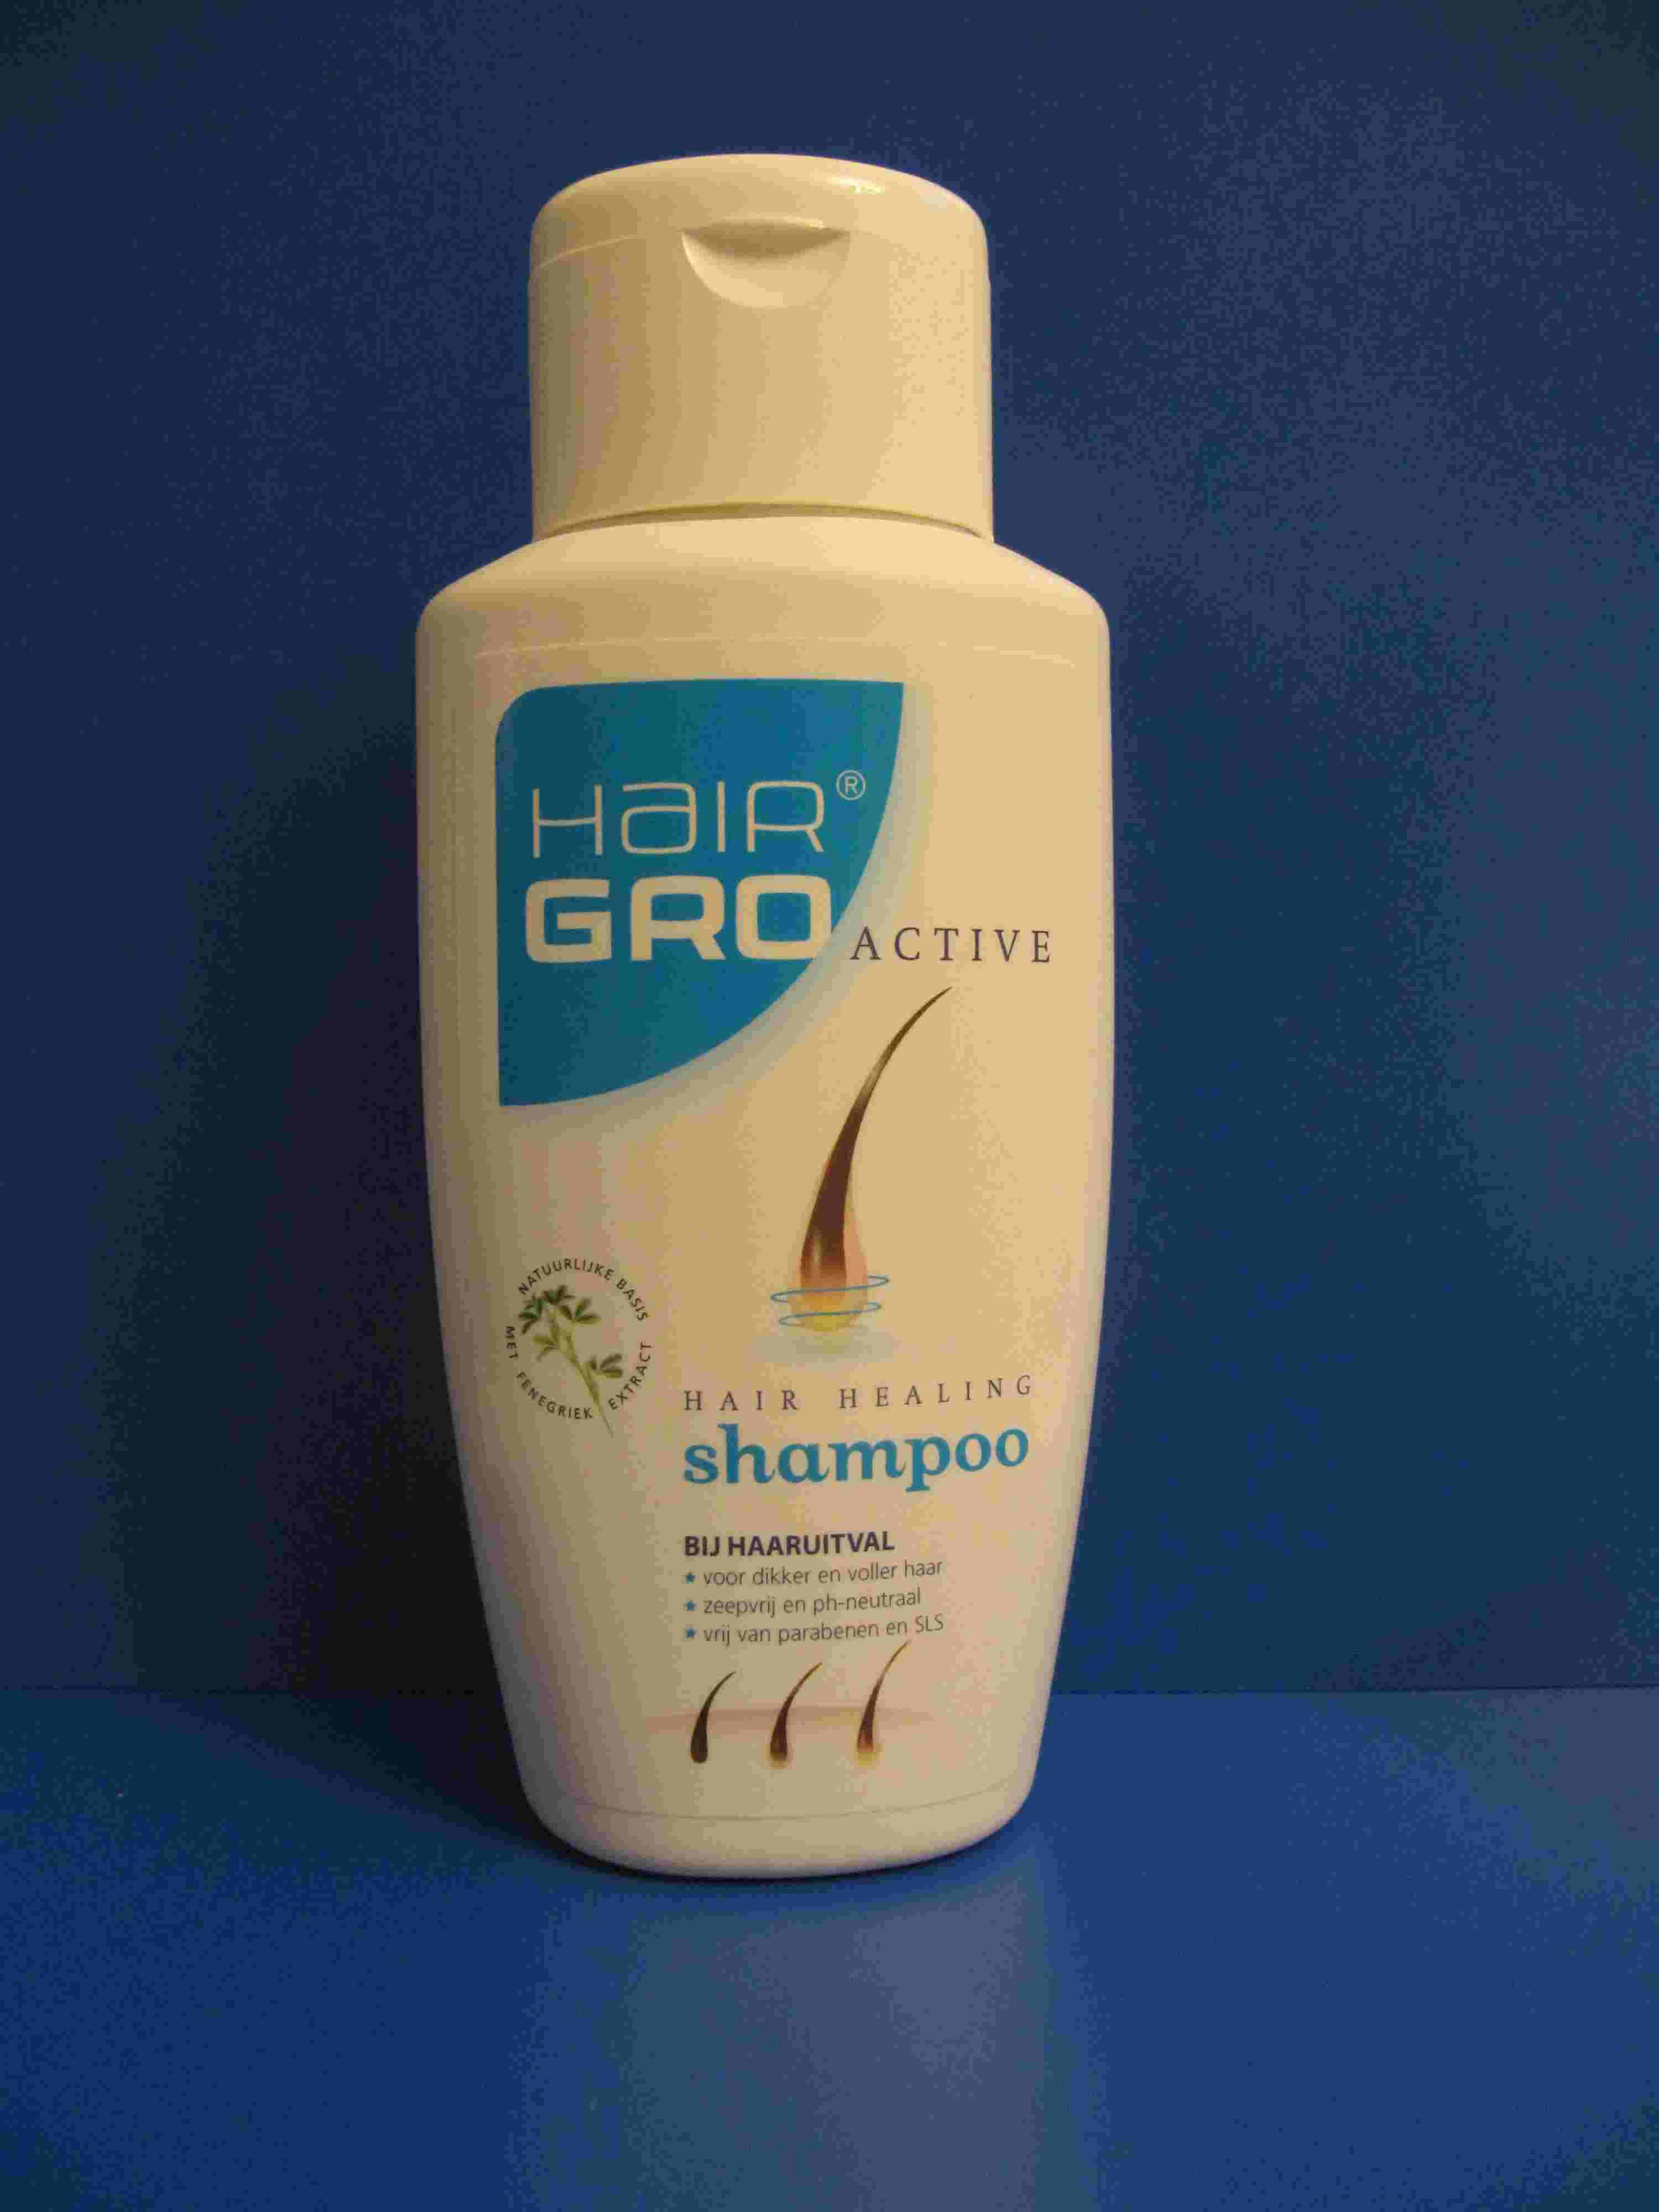 Hairgro Active shampoo  verminderde hairgroei voorkomt haaruitval dun haar voedt haarwortel